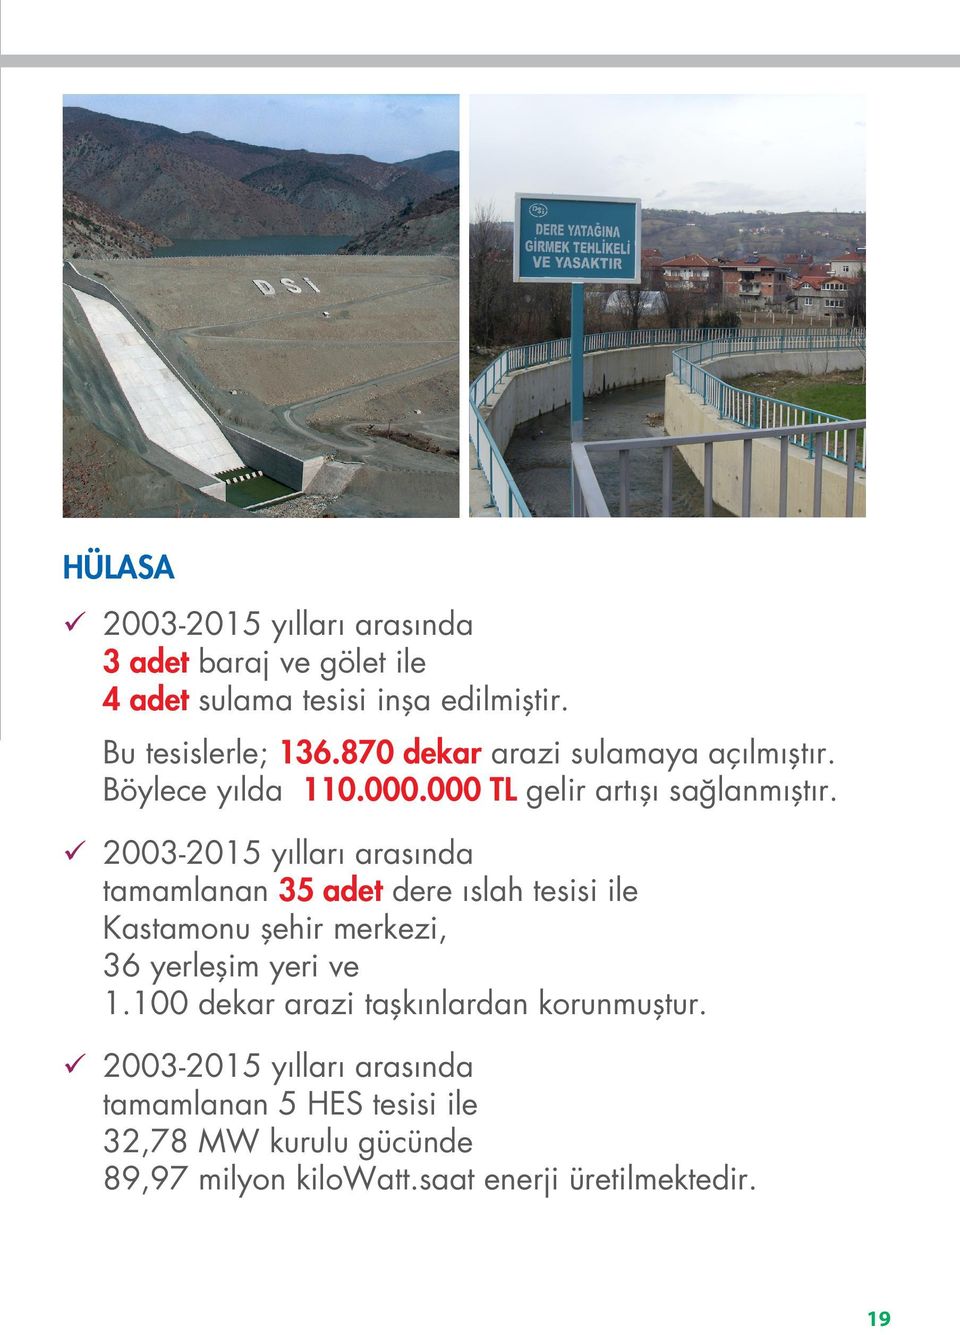 2003-2015 yılları arasında tamamlanan 35 adet dere ıslah tesisi ile Kastamonu şehir merkezi, 36 yerleşim yeri ve 1.